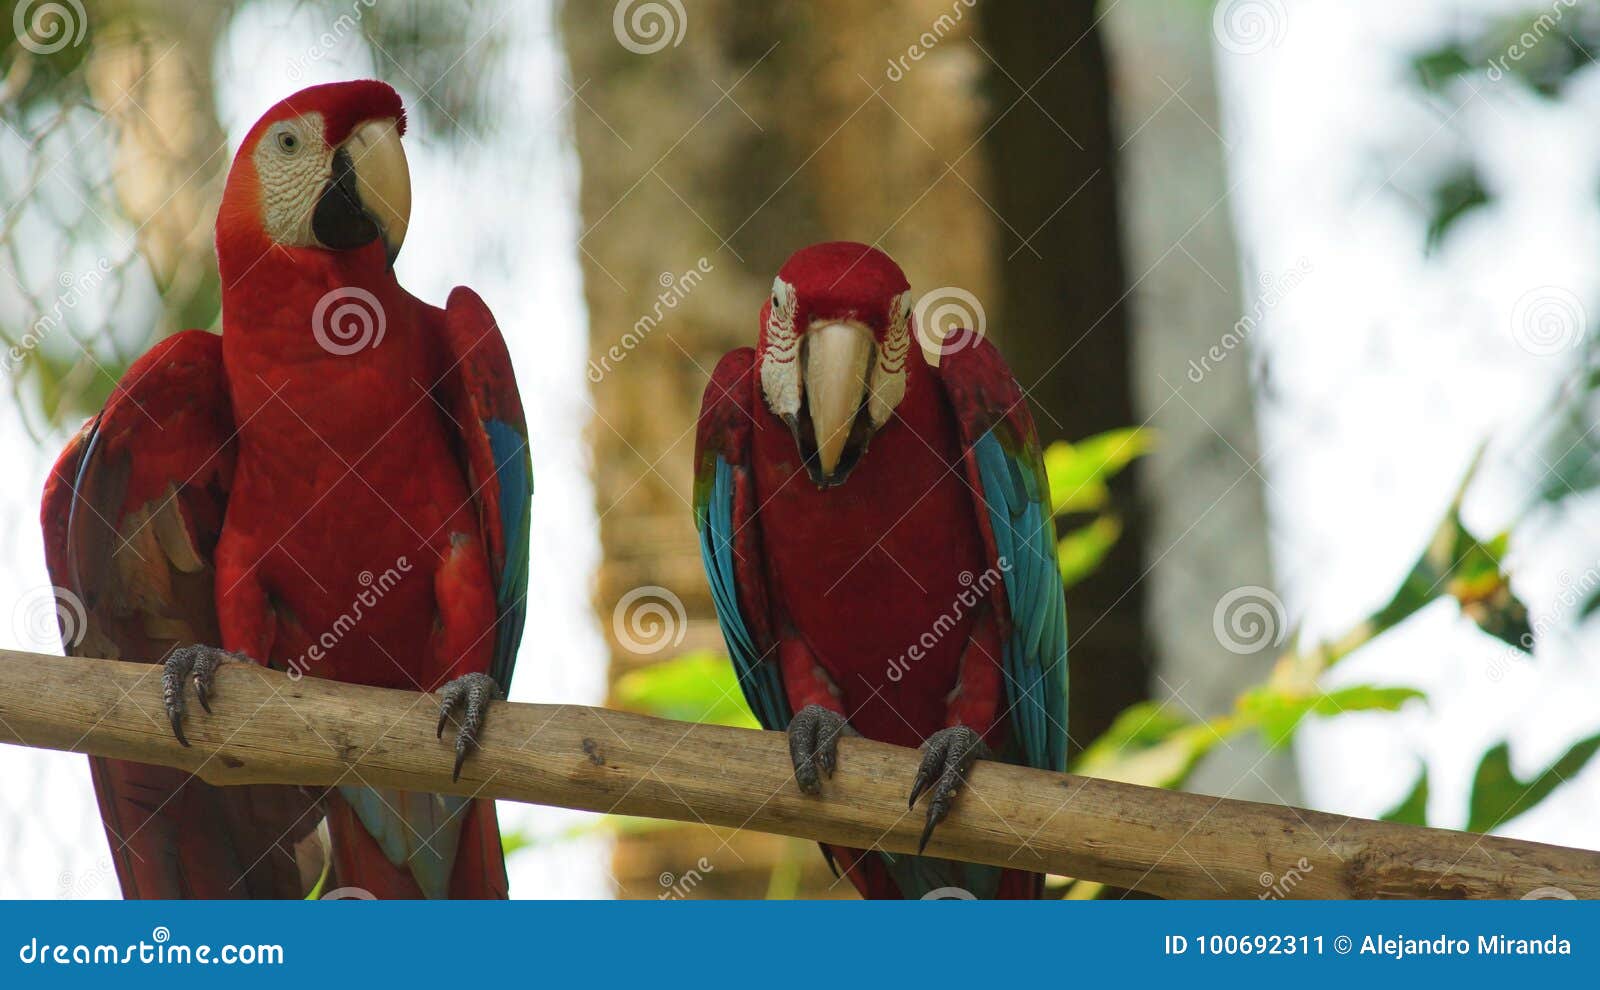 macaws on a branch in ecuadorian amazon. common names: guacamayo or papagayo.